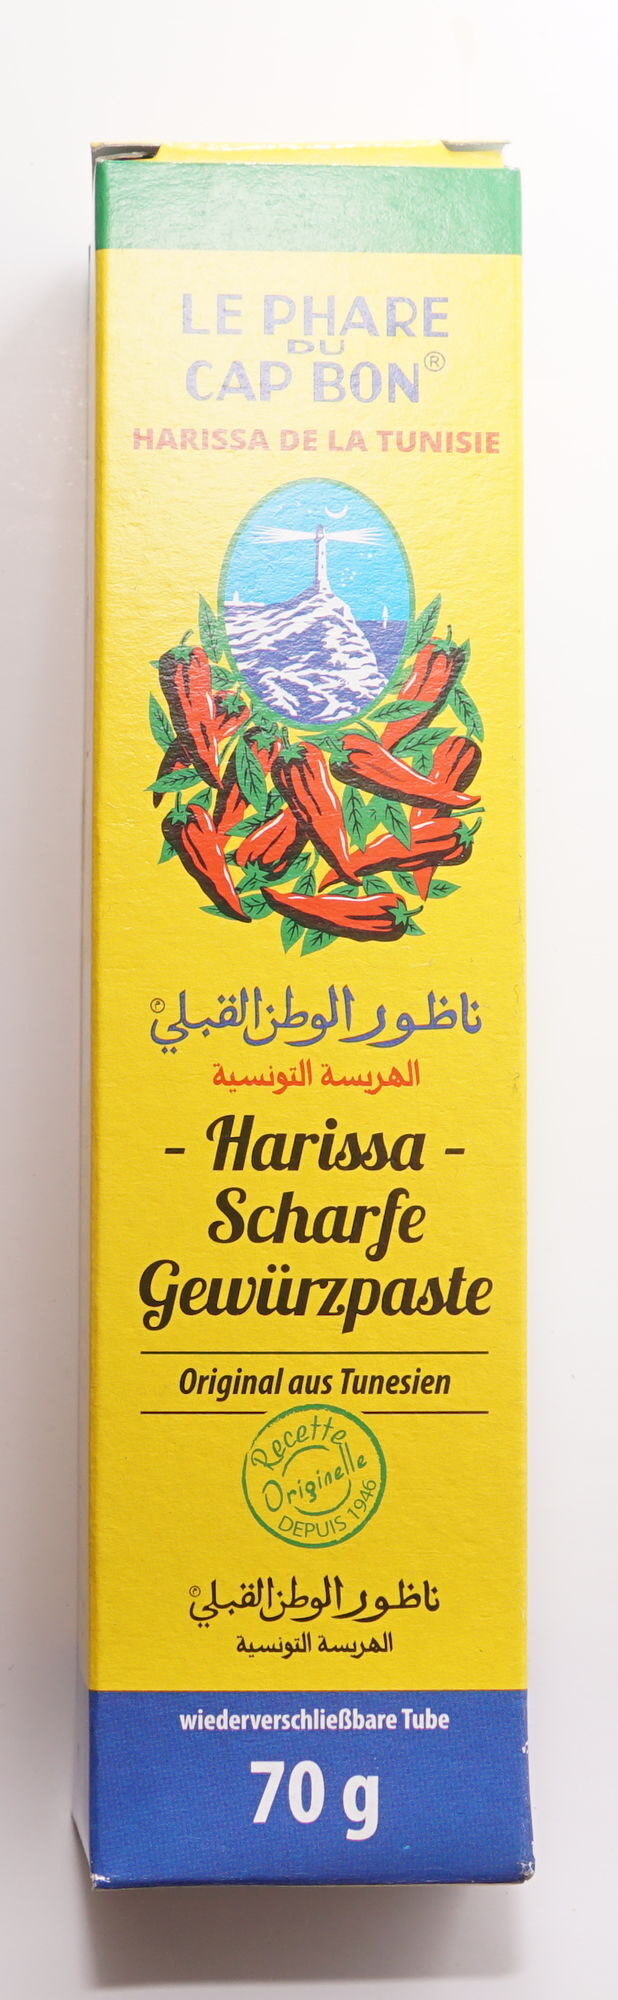 Harissa de la Tunisie - Produkt